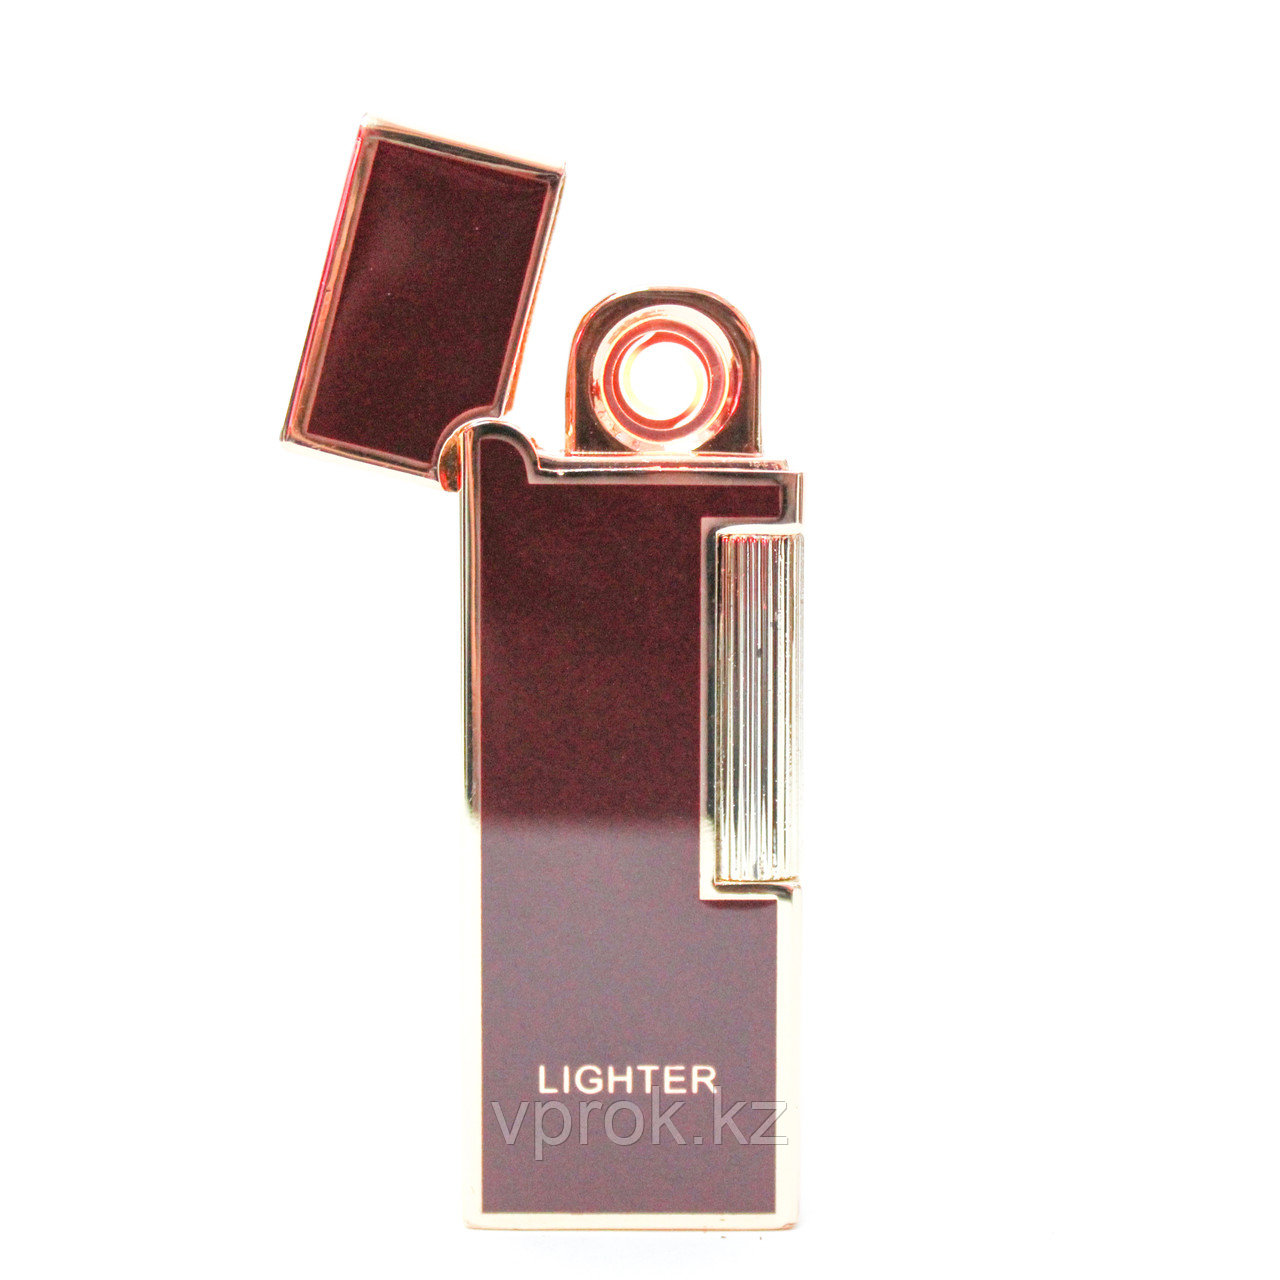 Электронная USB зажигалка, Lighter, бордовая, фото 1